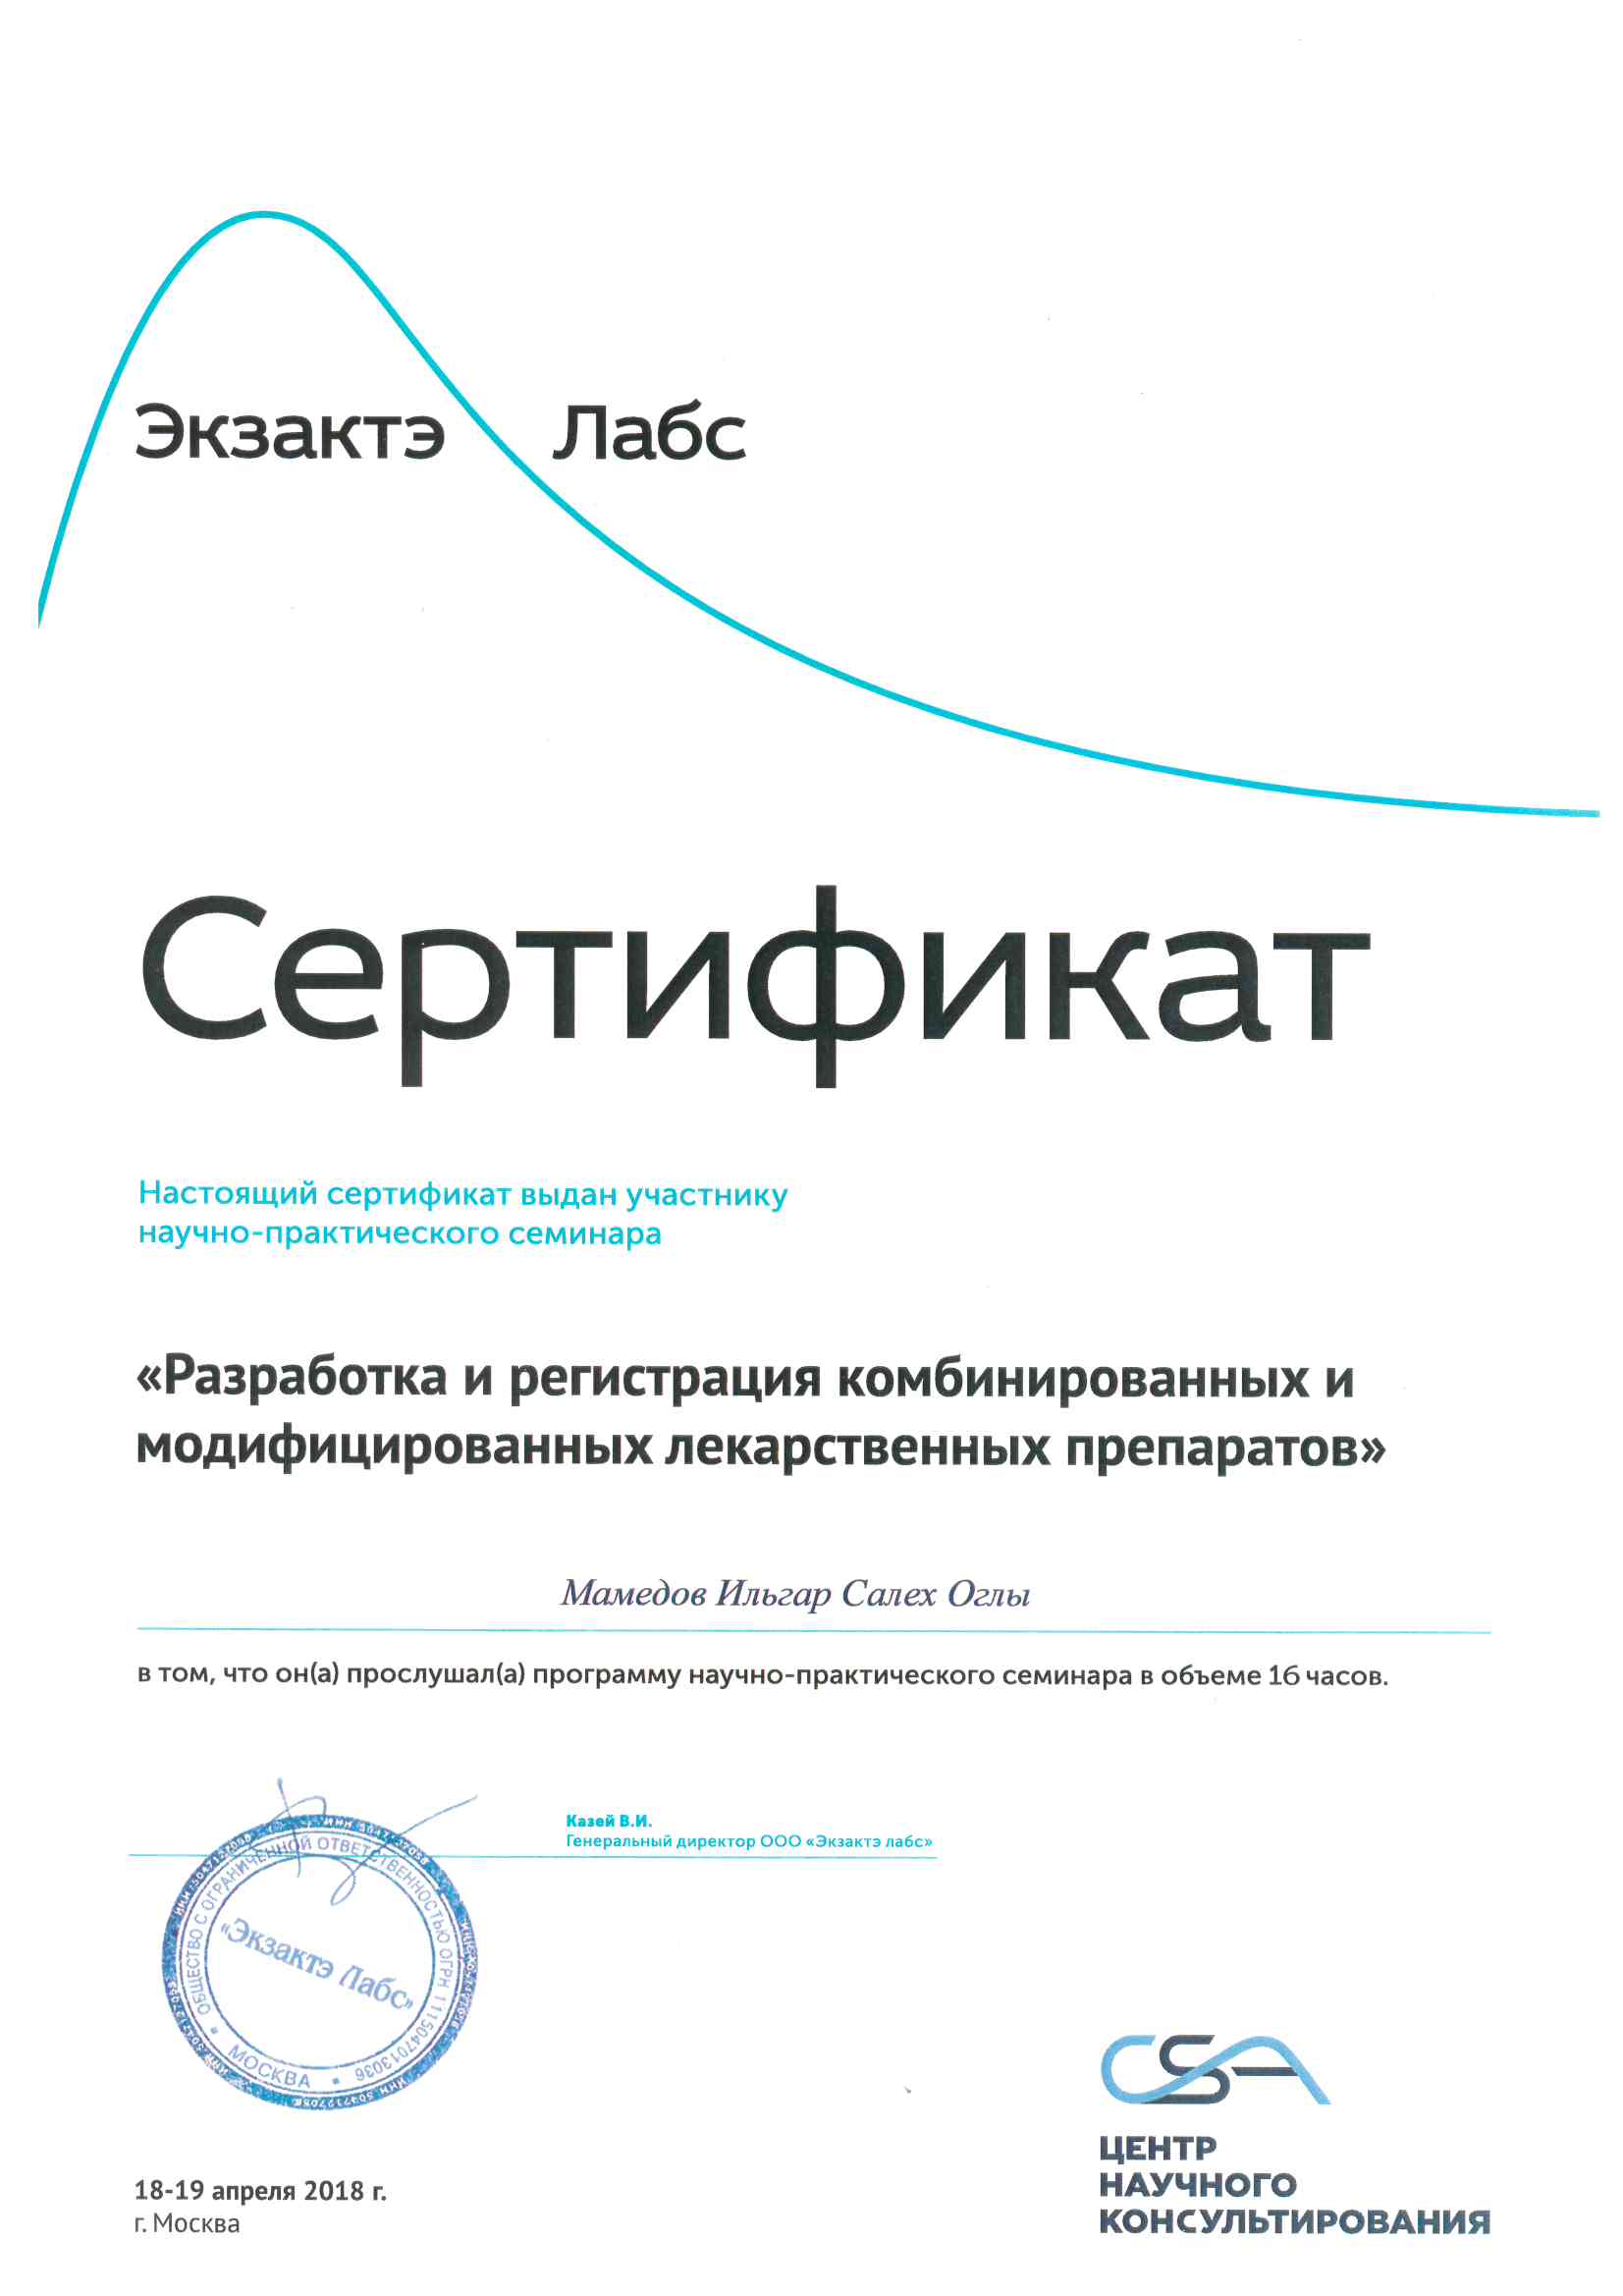 Сертификат научно-практического семинара РАЗРАБОТКА И РЕГИСТРАЦИЯ КОМБИНИРОВАННЫХ И МОДИЦИЦИРОВАННЫХ ЛЕКАРСТВЕННЫХ ПРЕПАРАТОВ. 2018